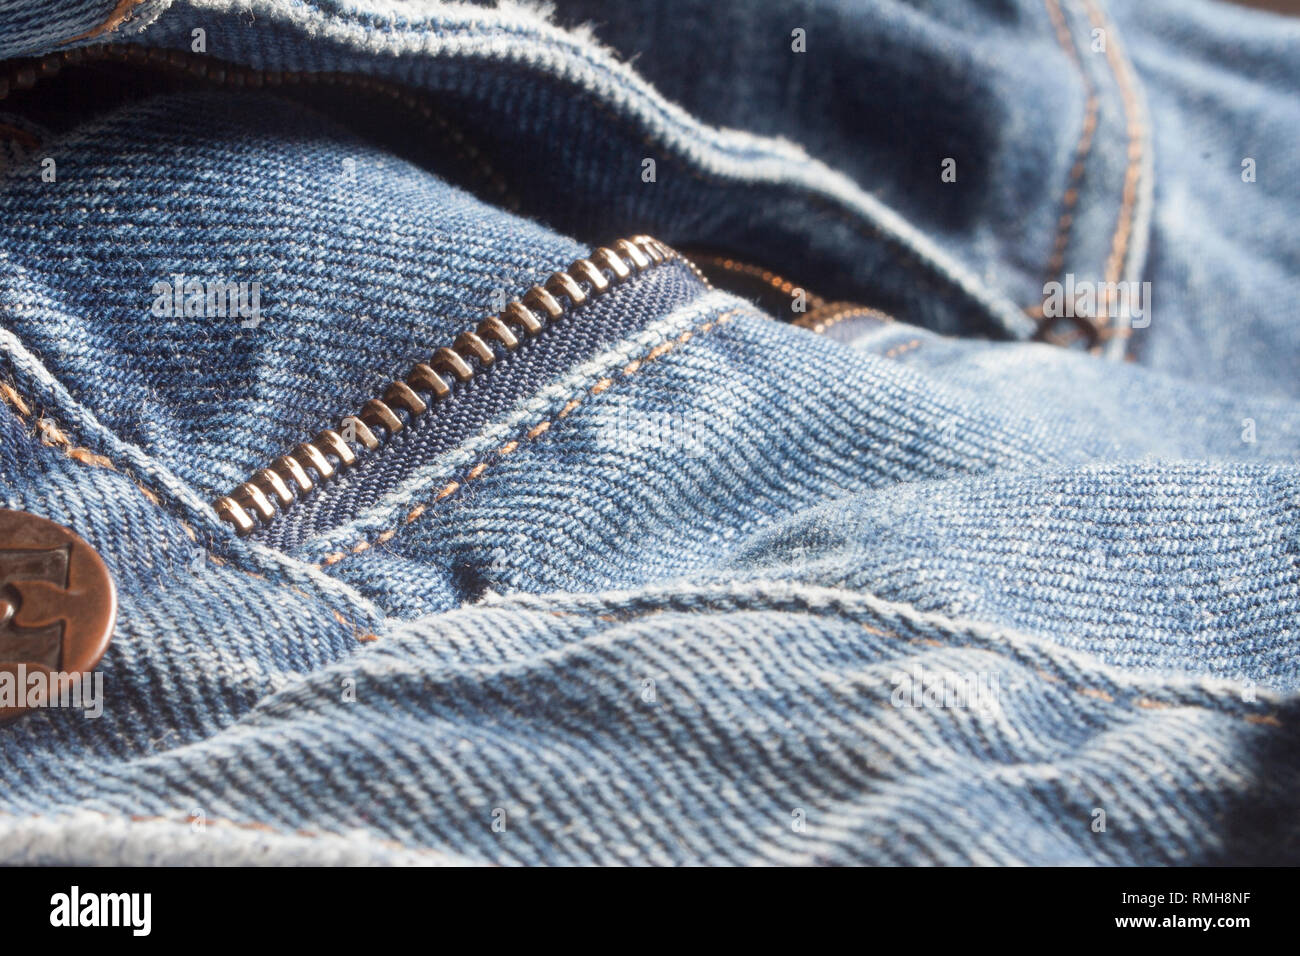 Détails de fermeture éclair sur un jeans Banque D'Images